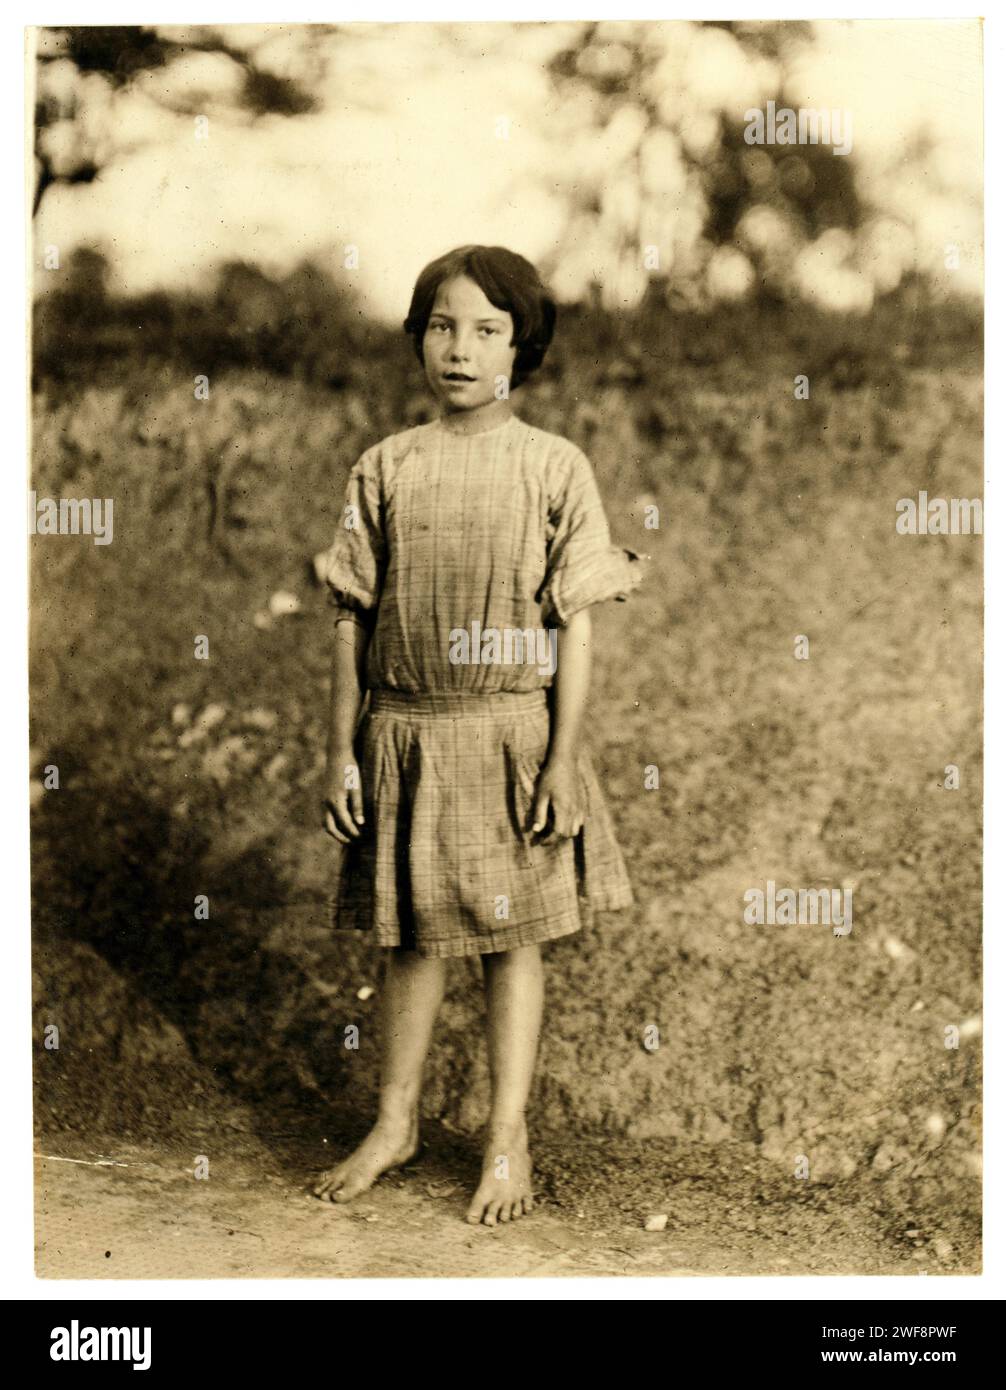 Lewis Hine : Ruth Rous, 11 ans ou moins, travailleuse d'usine de coton, Randleman, Caroline du Nord, 1913 Banque D'Images